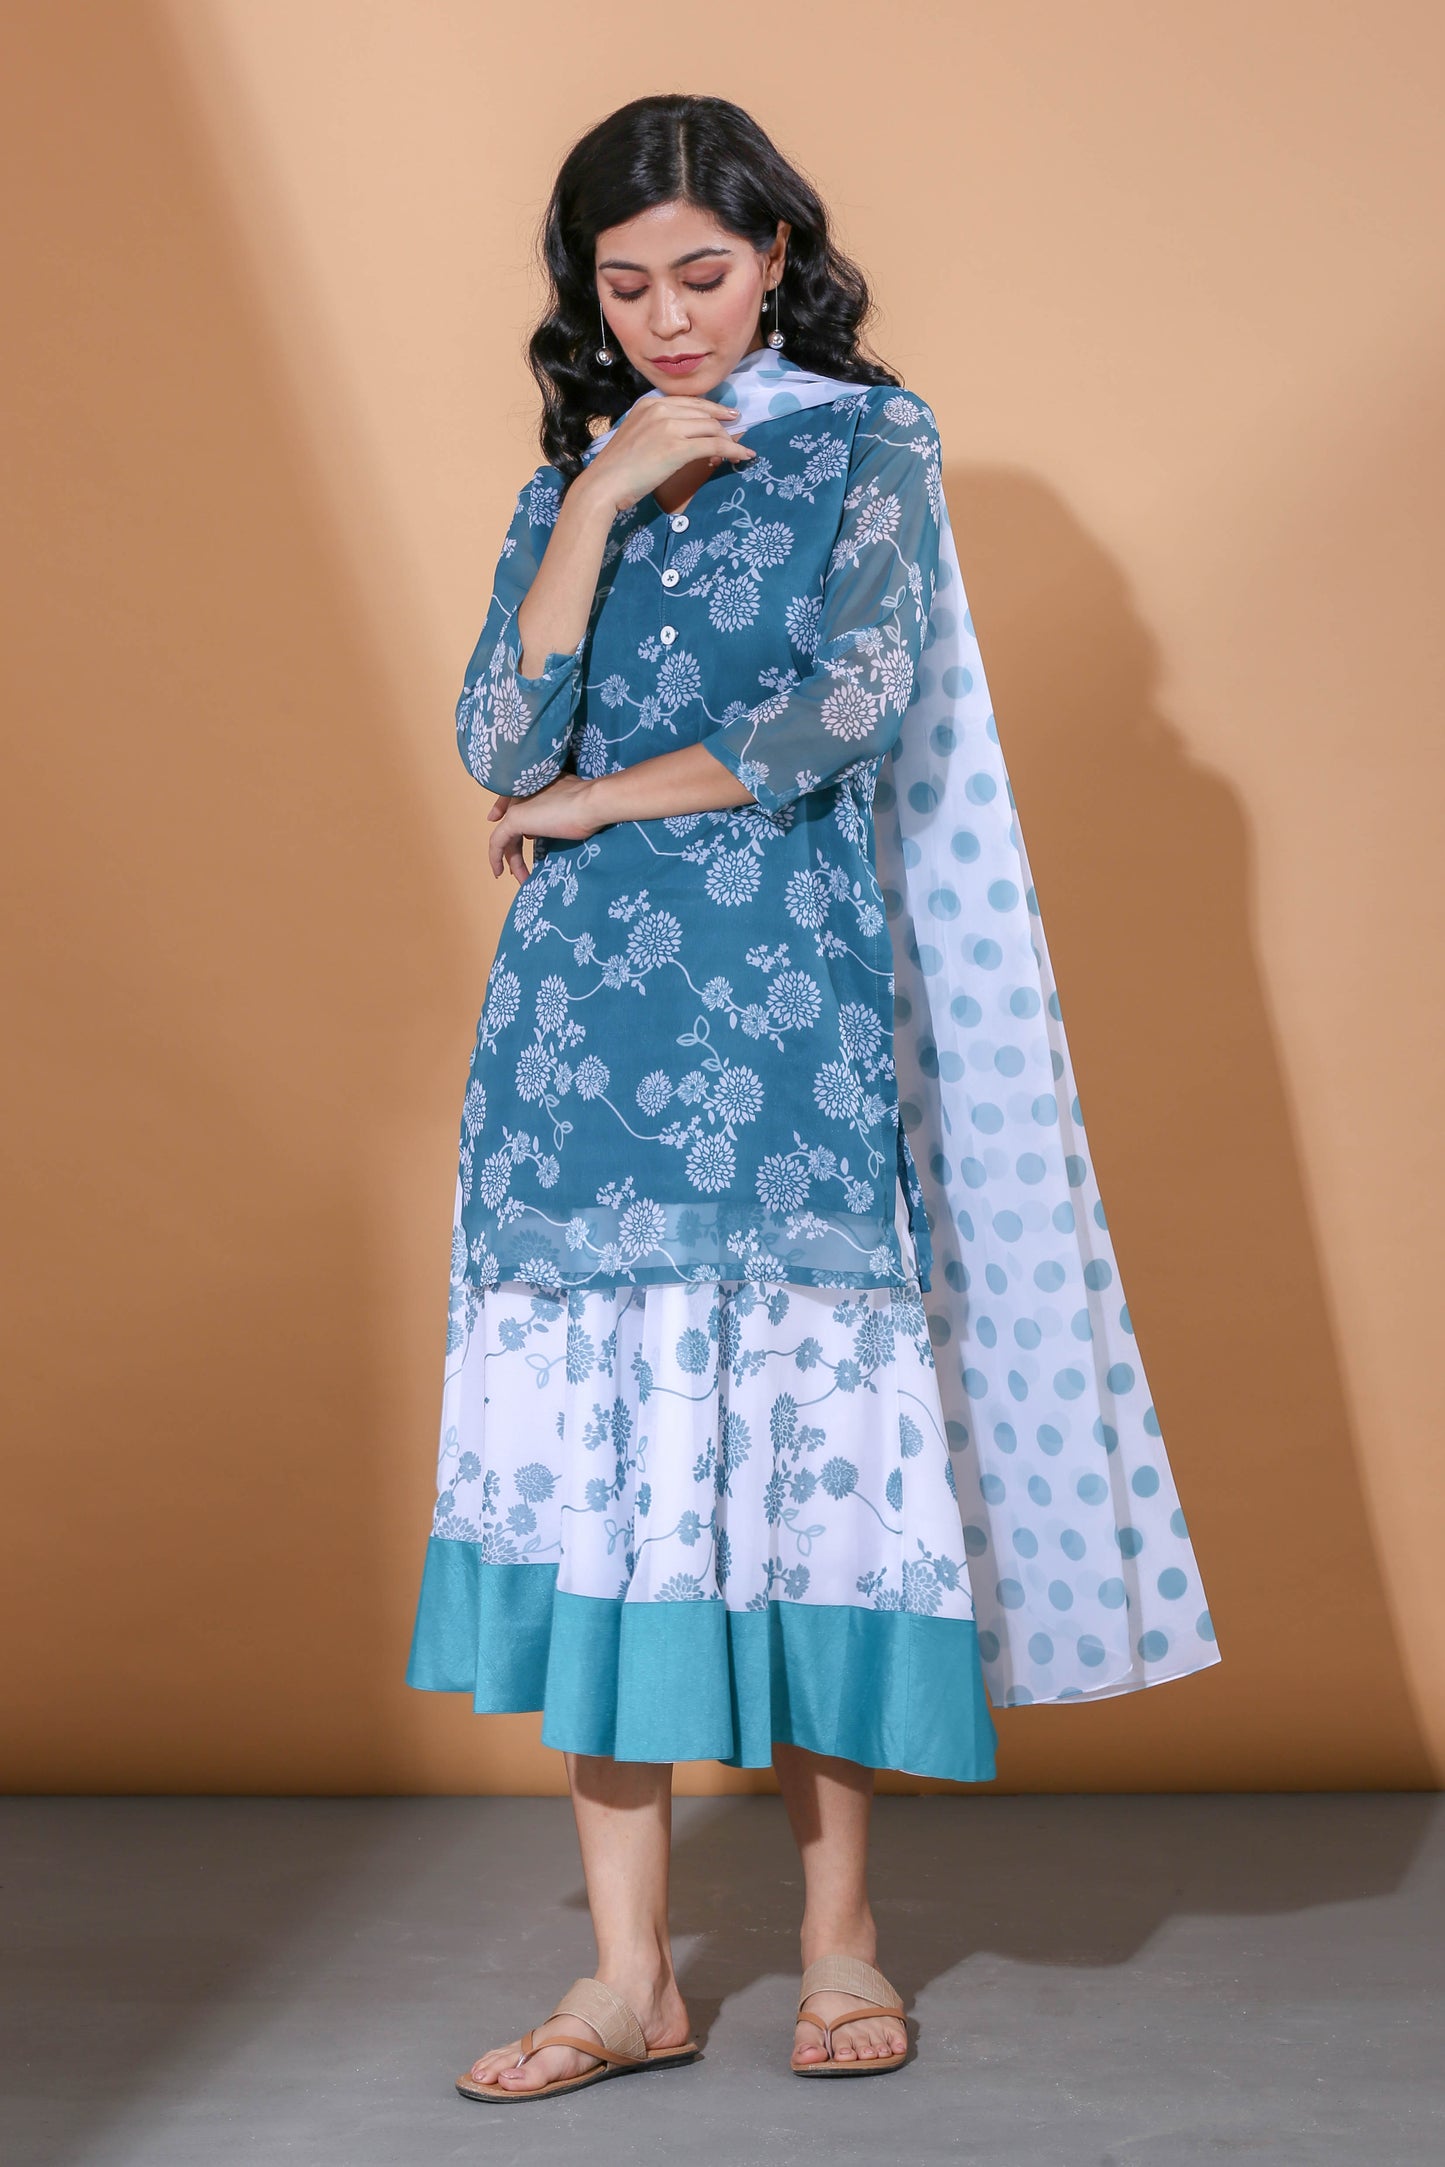 Adhikam- Teal blue kurti and lehenga set